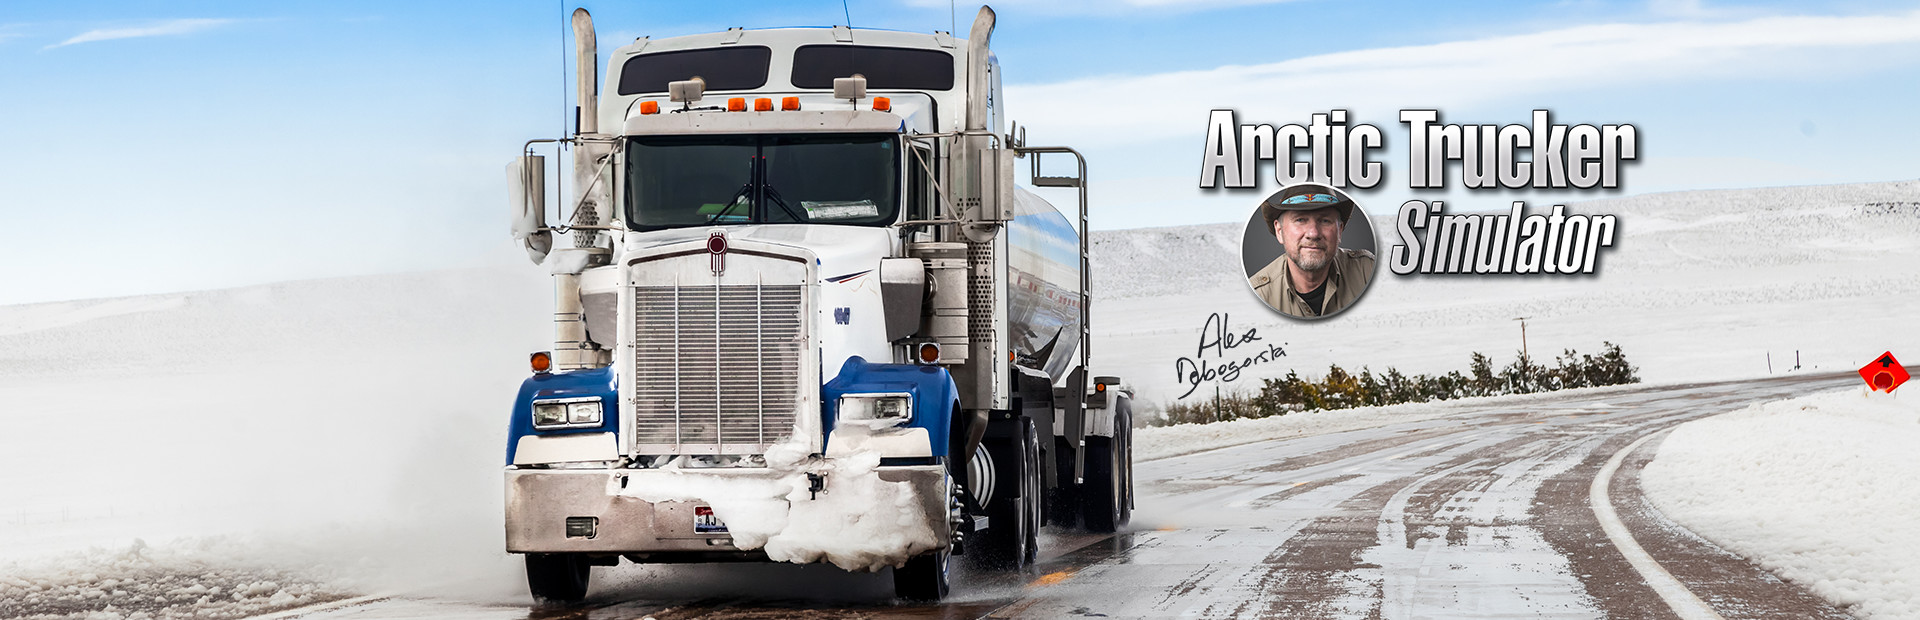 Arctic Trucker Simulator cover image